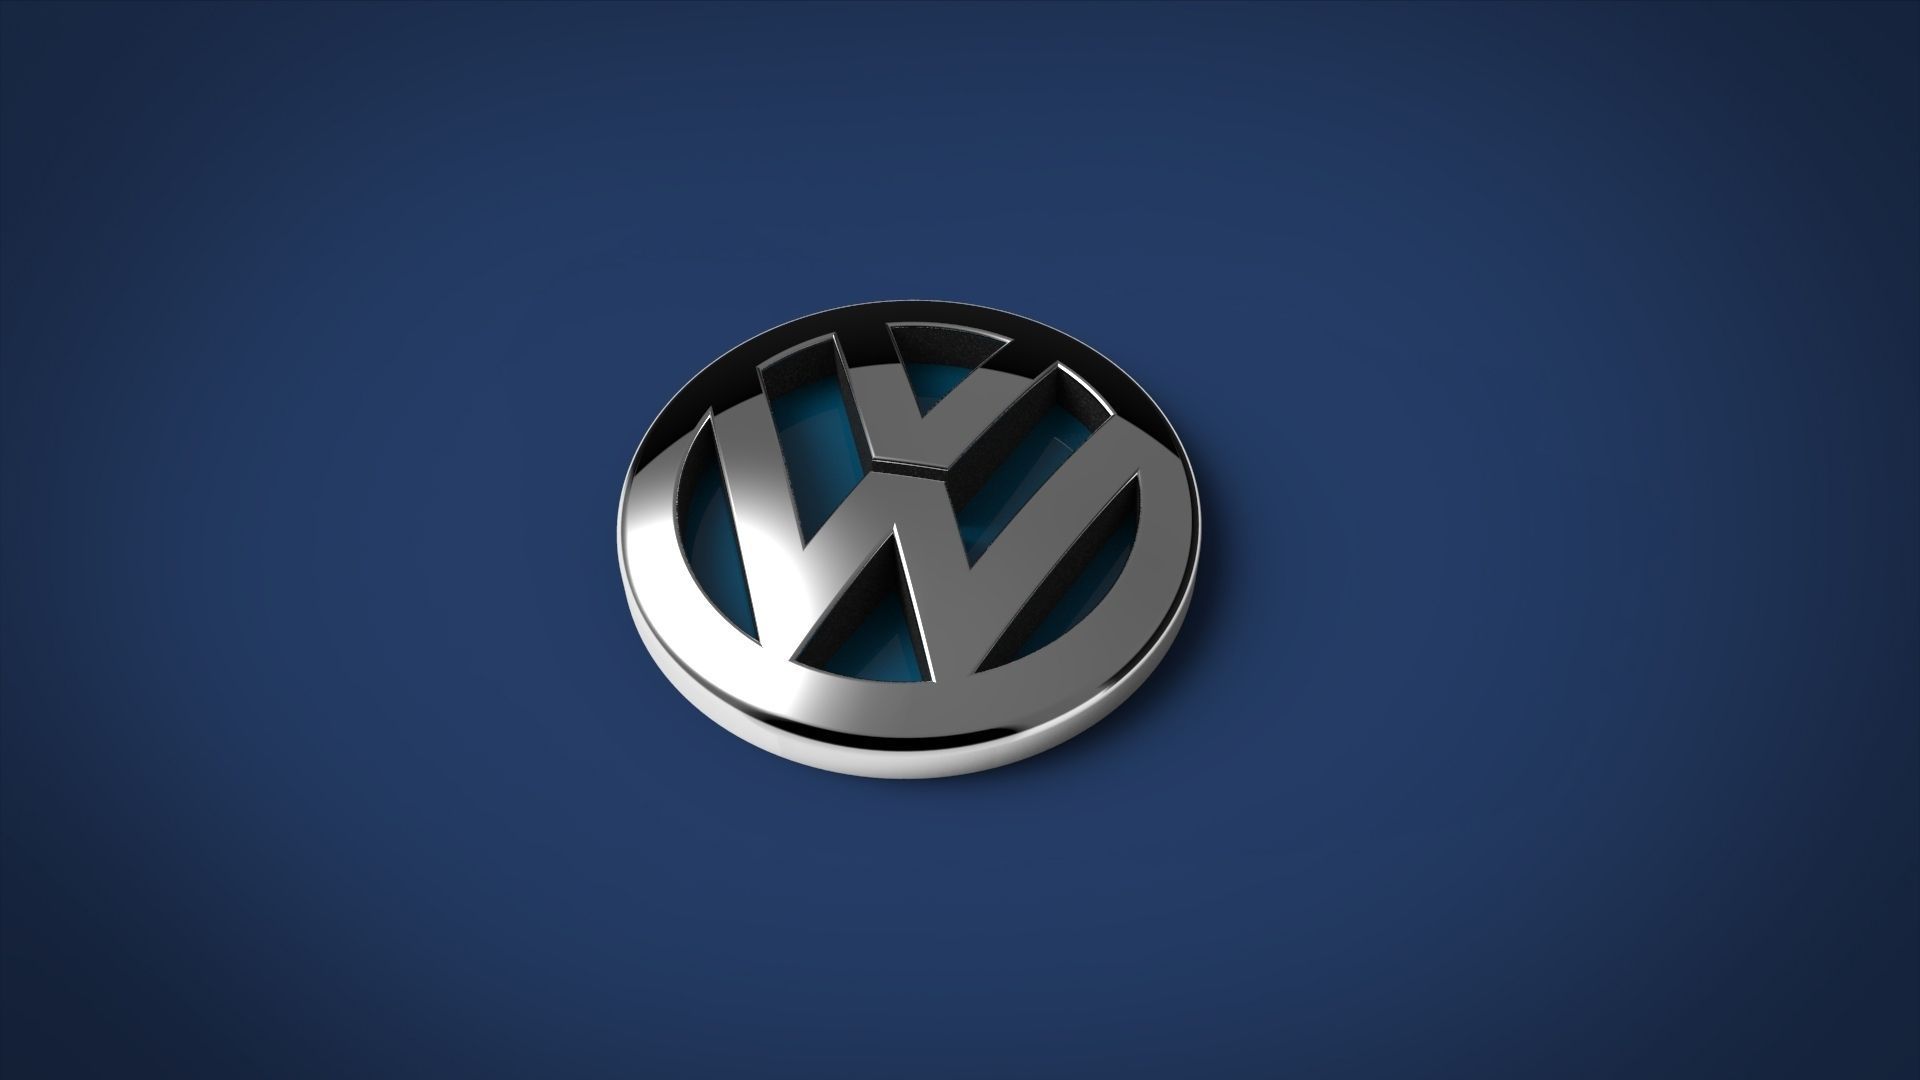 Volkswagen tendrá un nuevo logotipo en 2019 | Excelencias del Motor